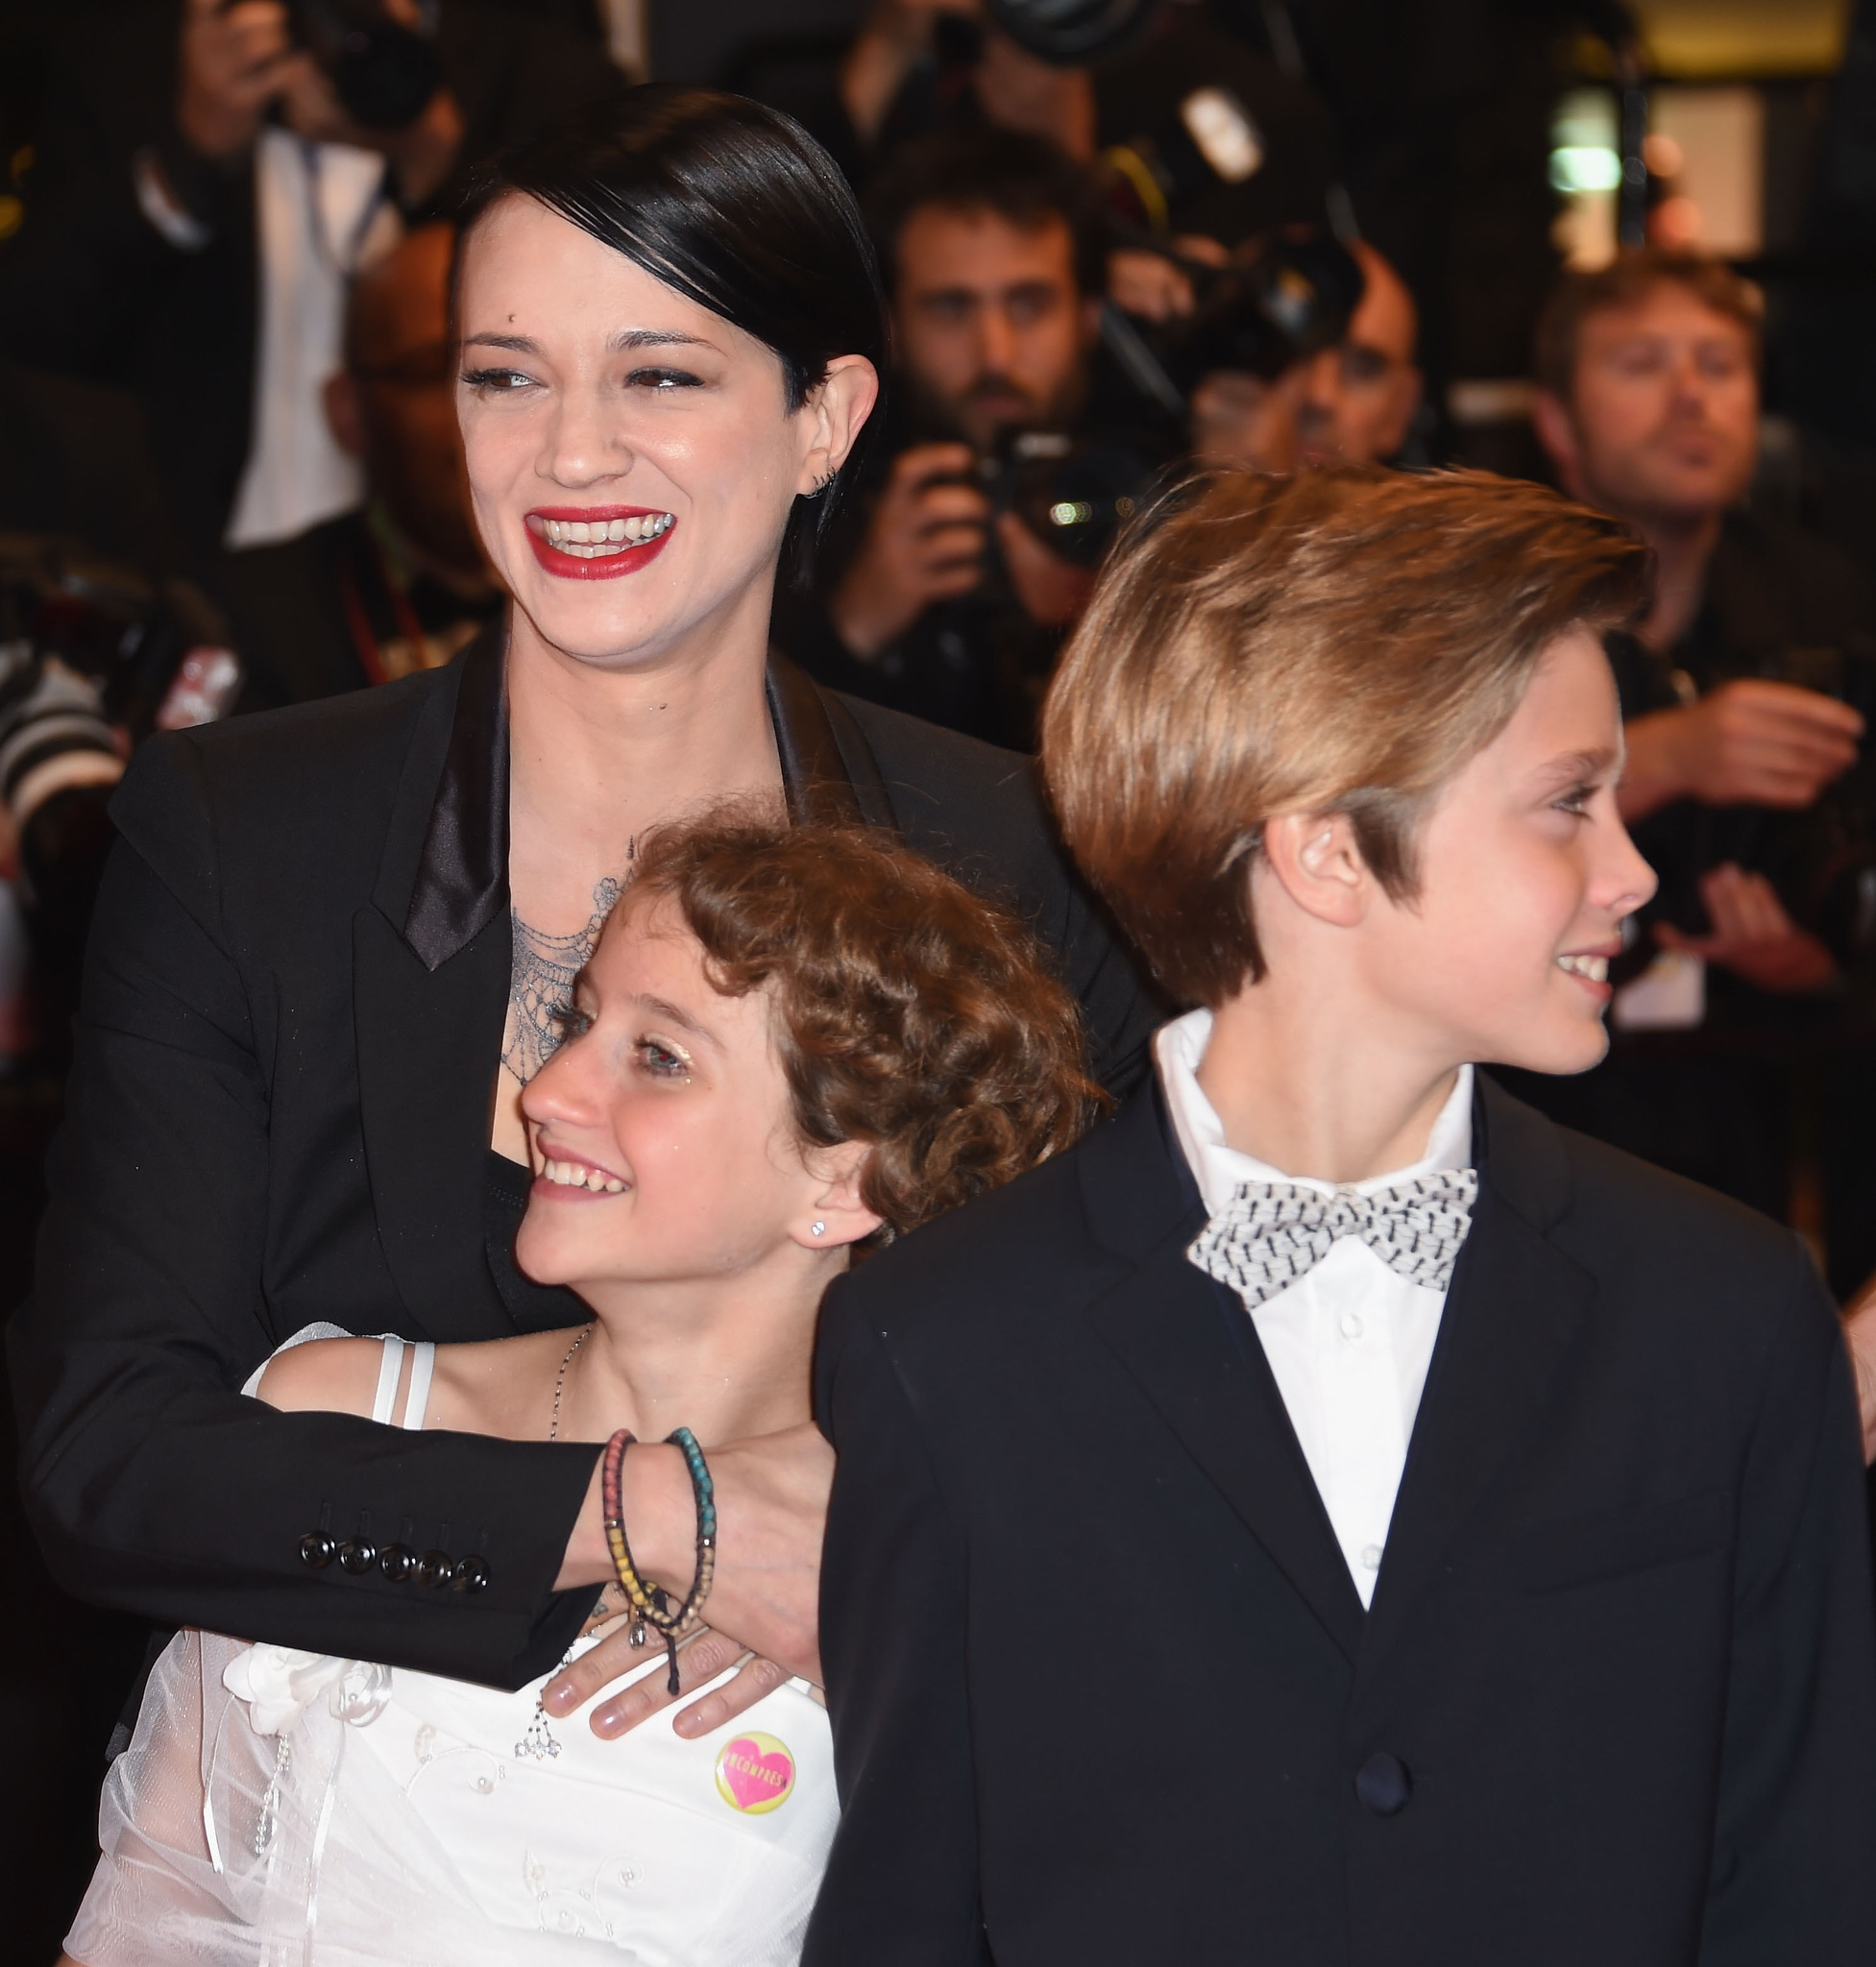 Asia Argento, Giulia Salerno and Andrea Pittorino at event of Incompresa (2014)